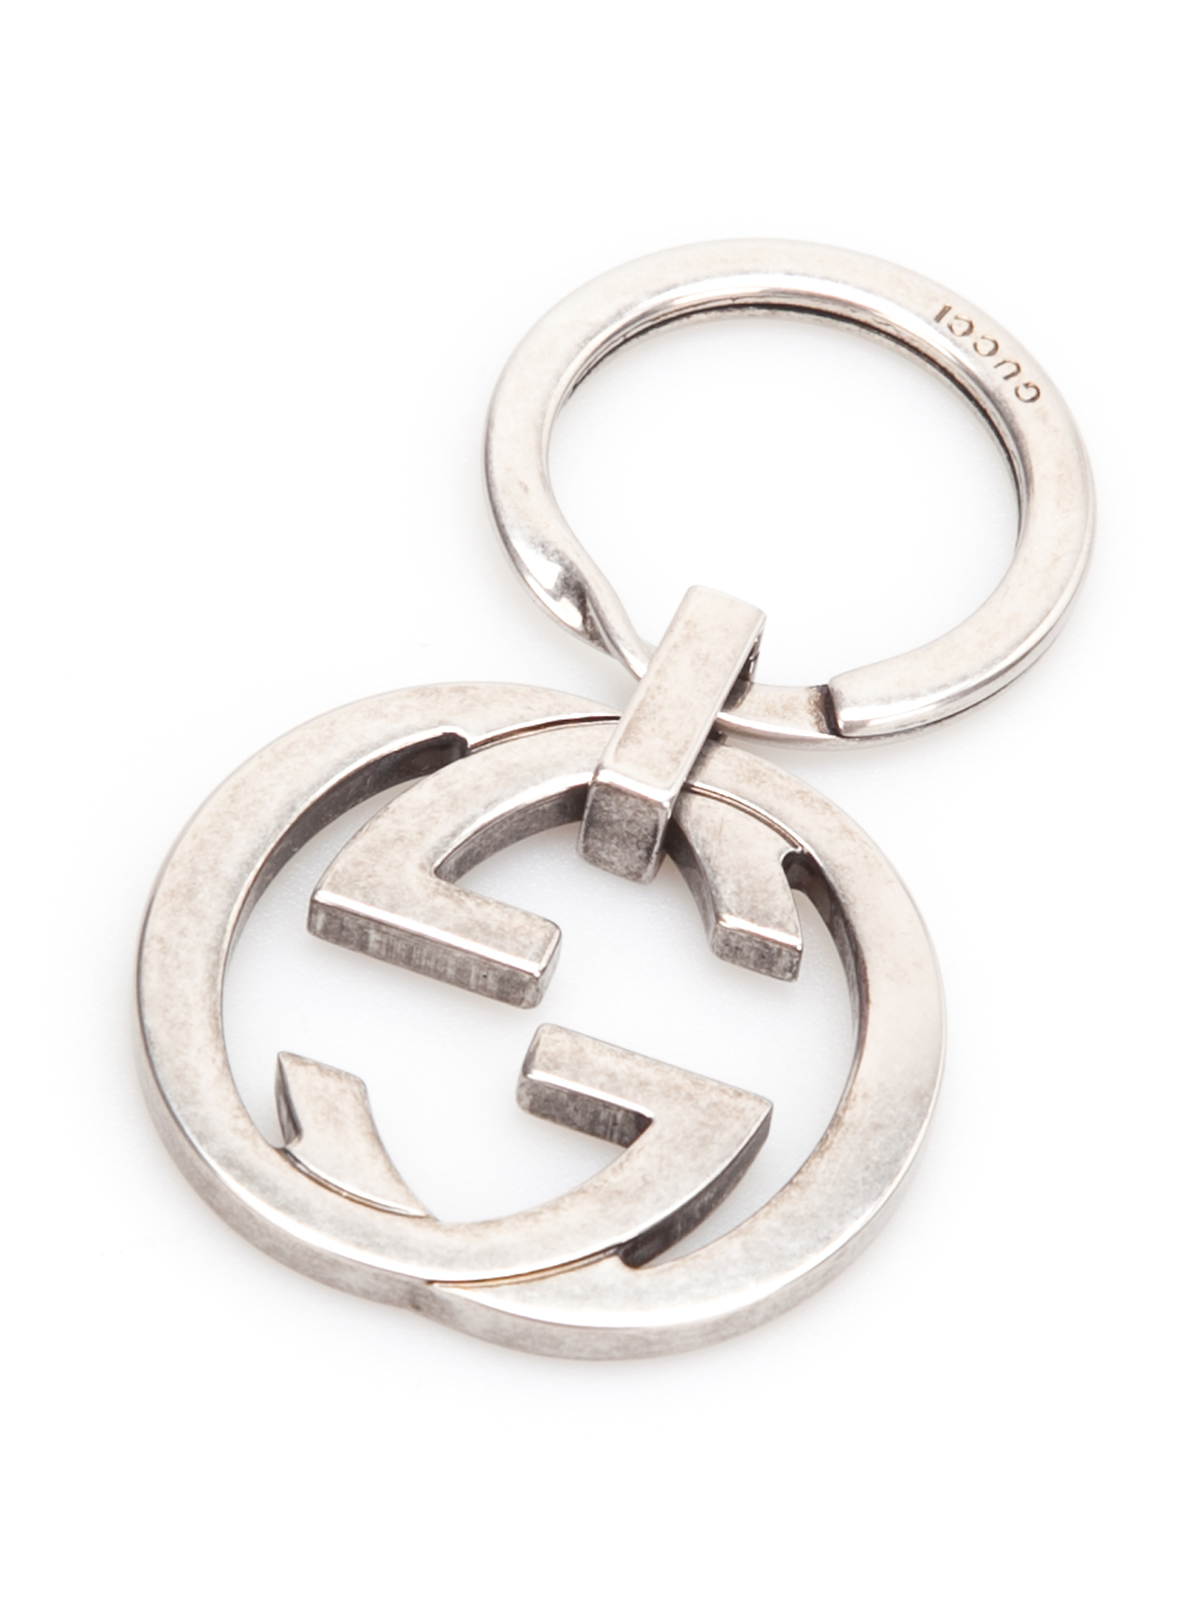 Key holders Gucci - GG keyring - 256734J160N8111 | Shop online at iKRIX